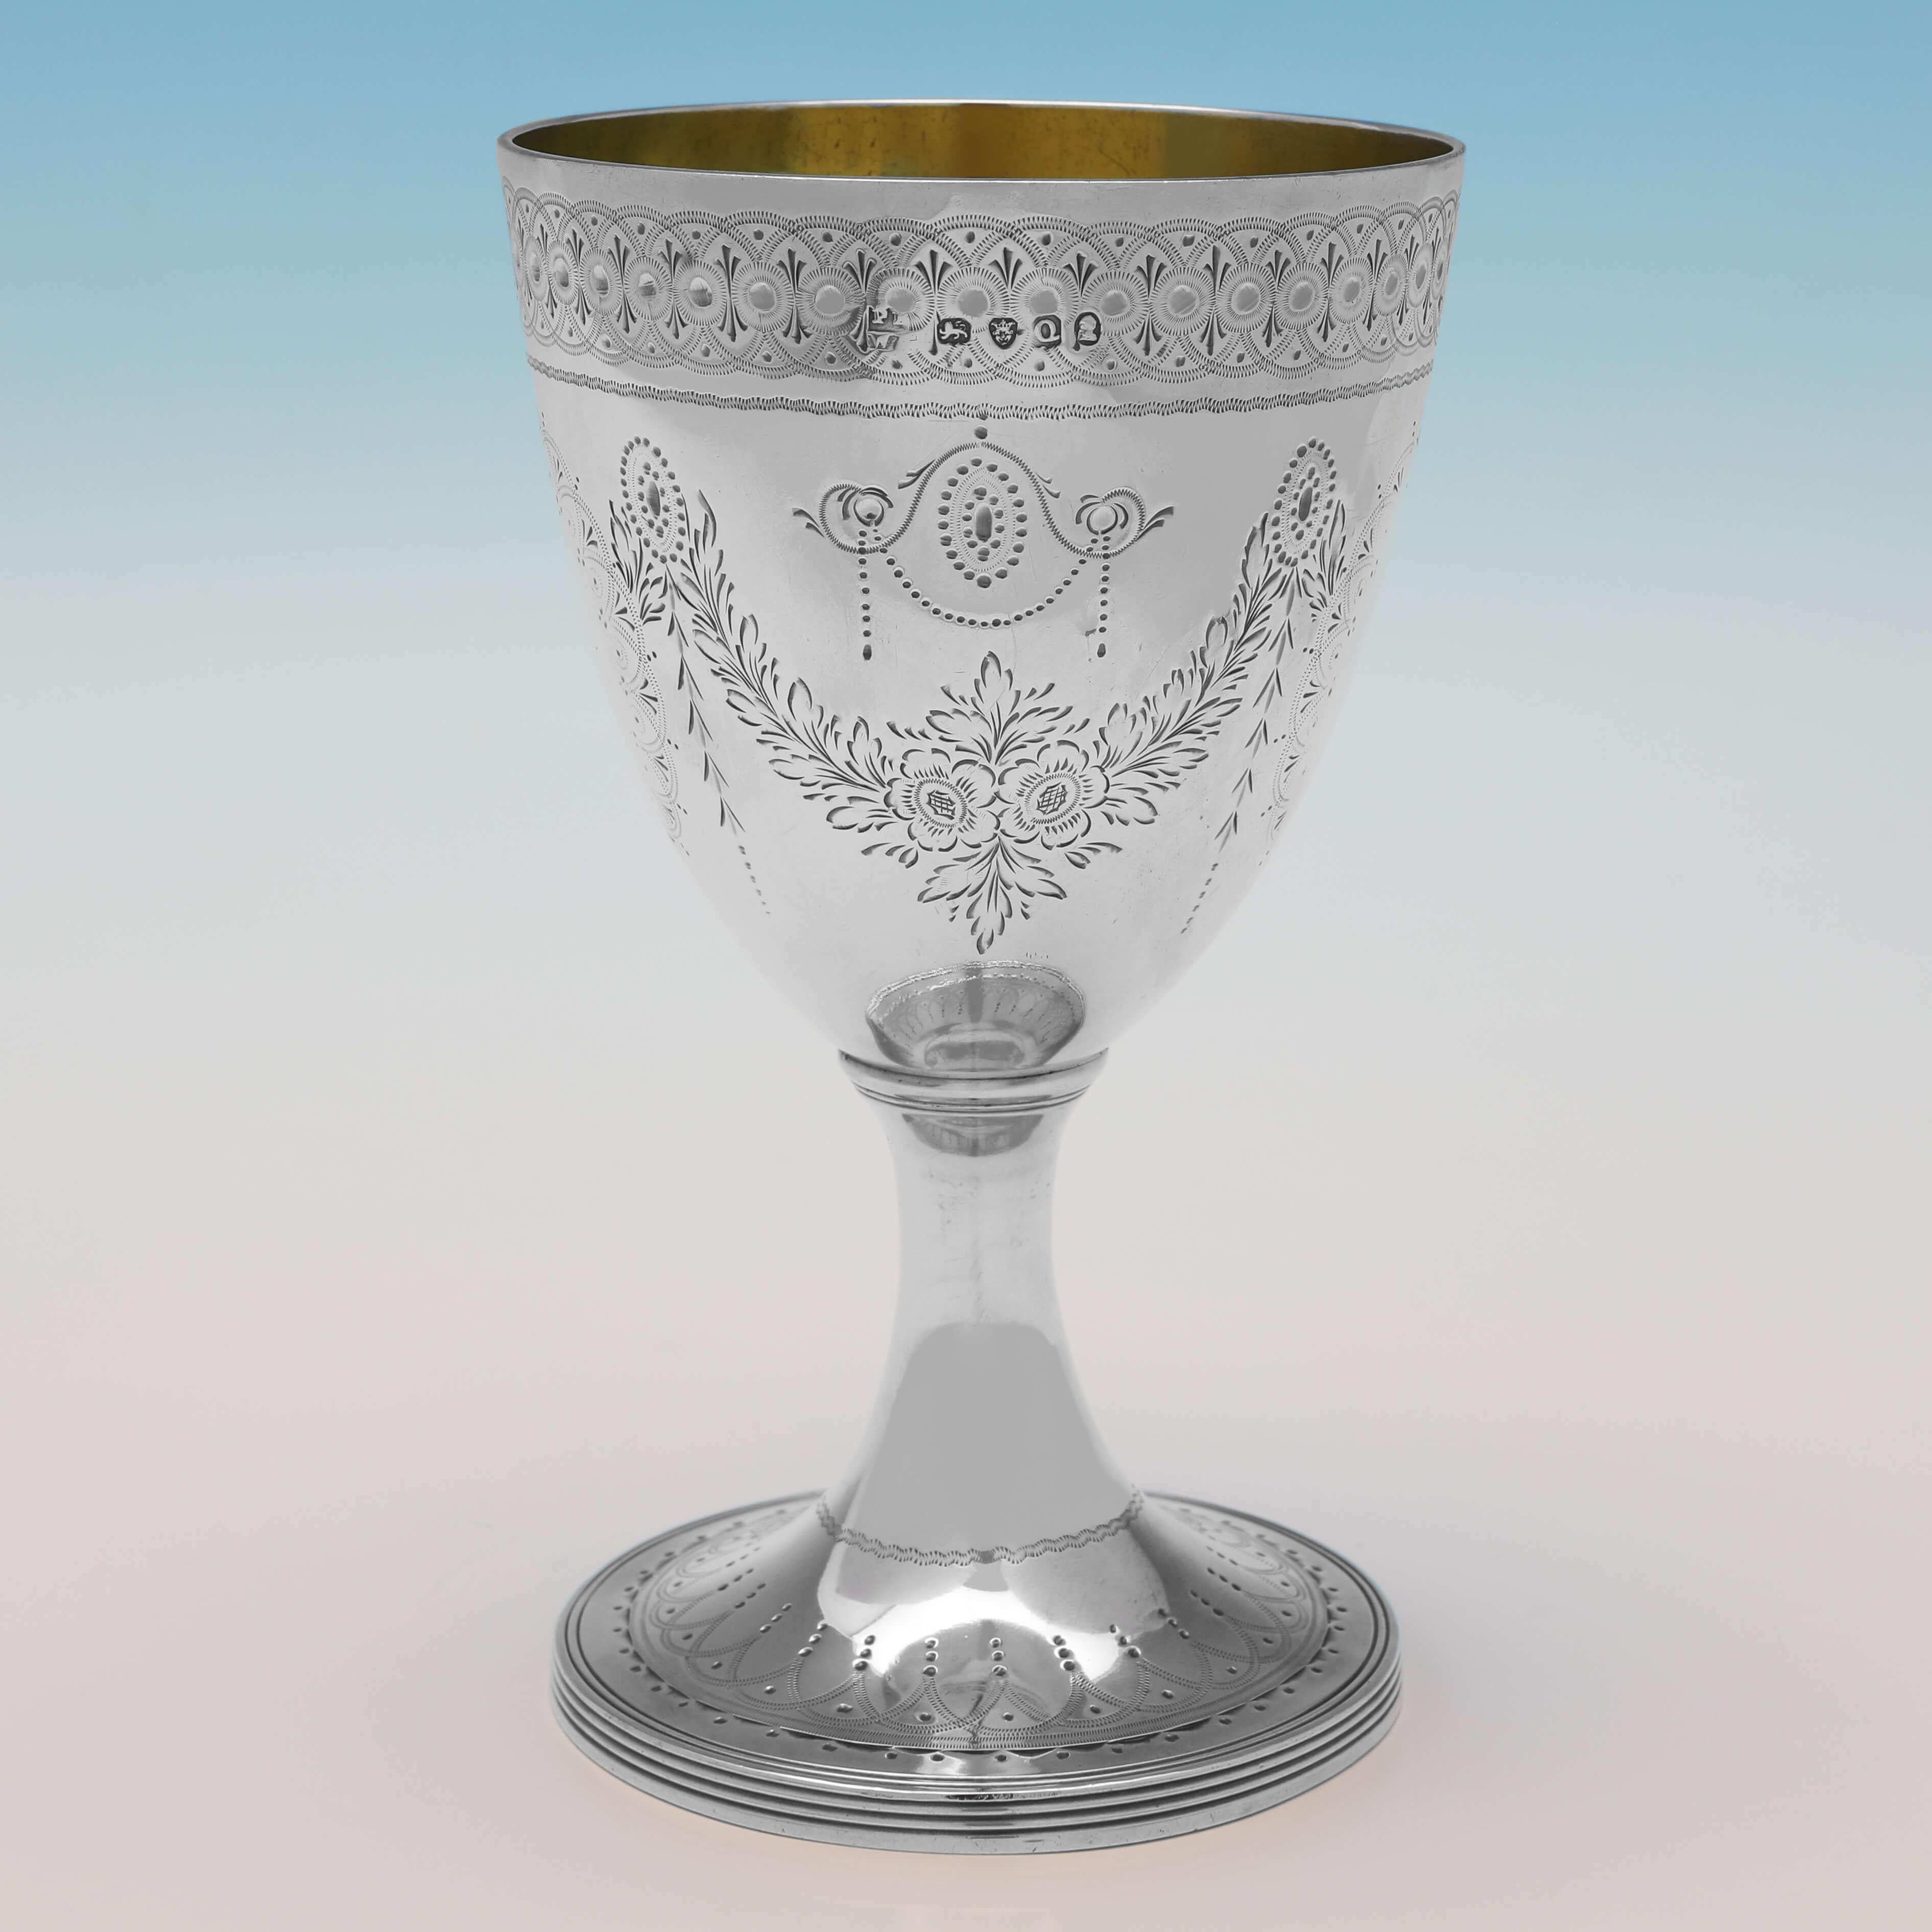 Poinçonné à Londres en 1811 par Peter & William Bateman, ce superbe gobelet en argent sterling ancien est dans le goût néoclassique, avec une décoration gravée en taille-douce et un intérieur doré. Le gobelet mesure 14,5 cm de haut, 8,5 cm de